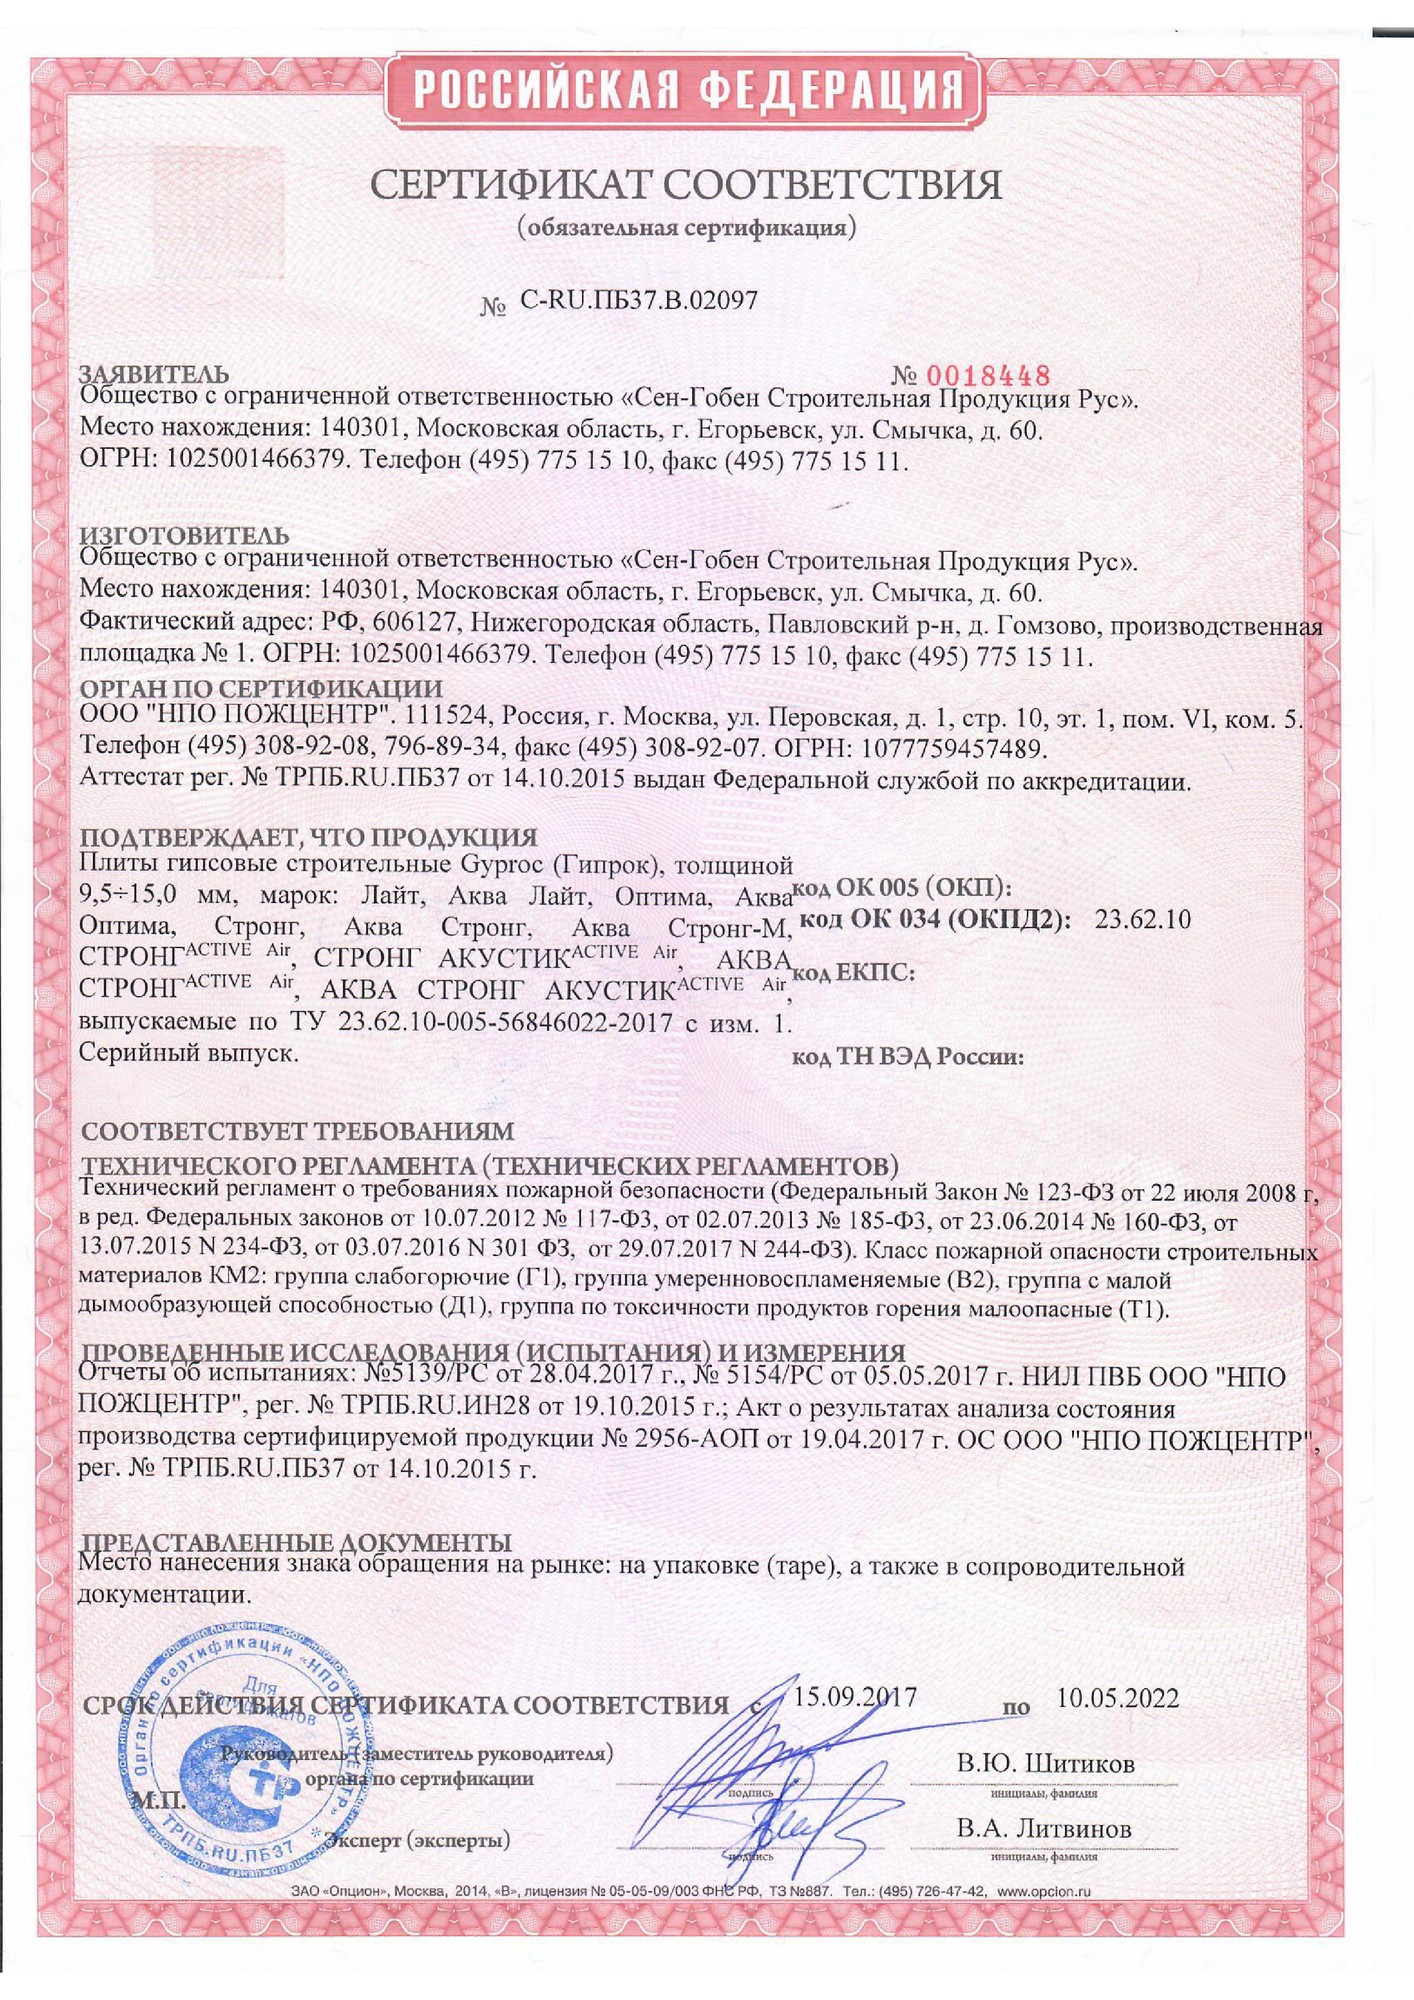 Сертификат соответствия (гипсовые строительные плиты "Gyproc")